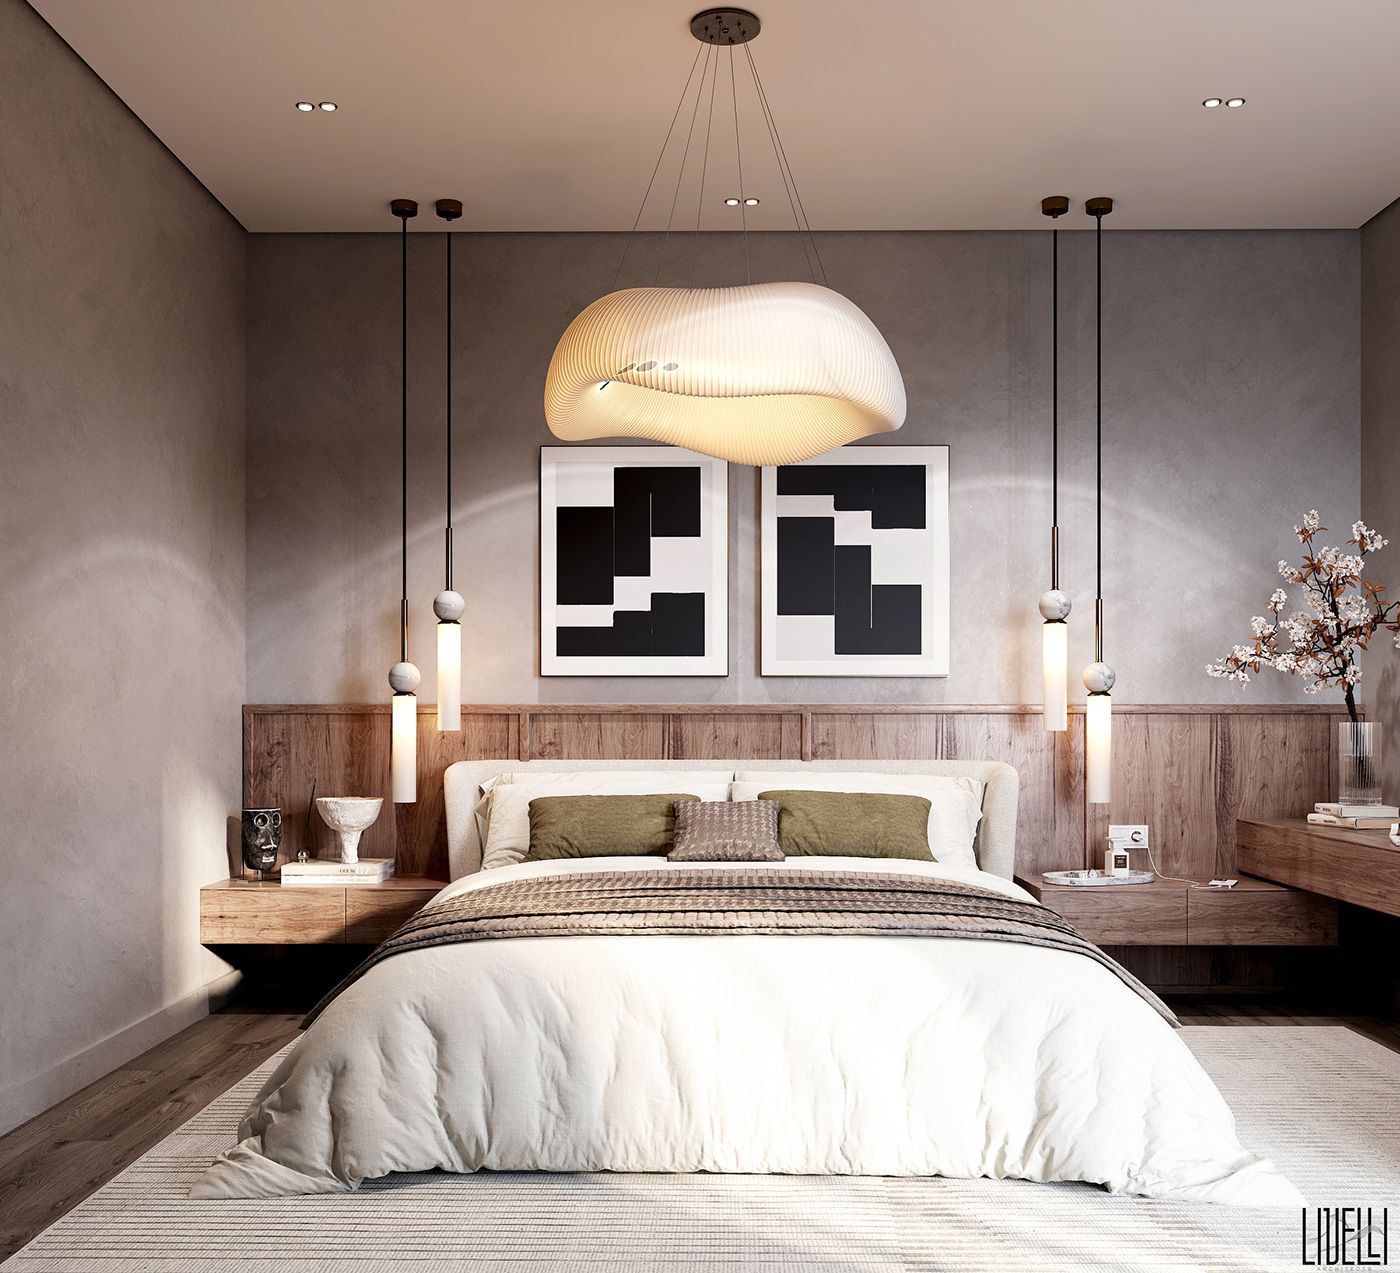 Trang trí phòng ngủ với đèn thả và tranh treo tường trườu tượng lạ mắt 